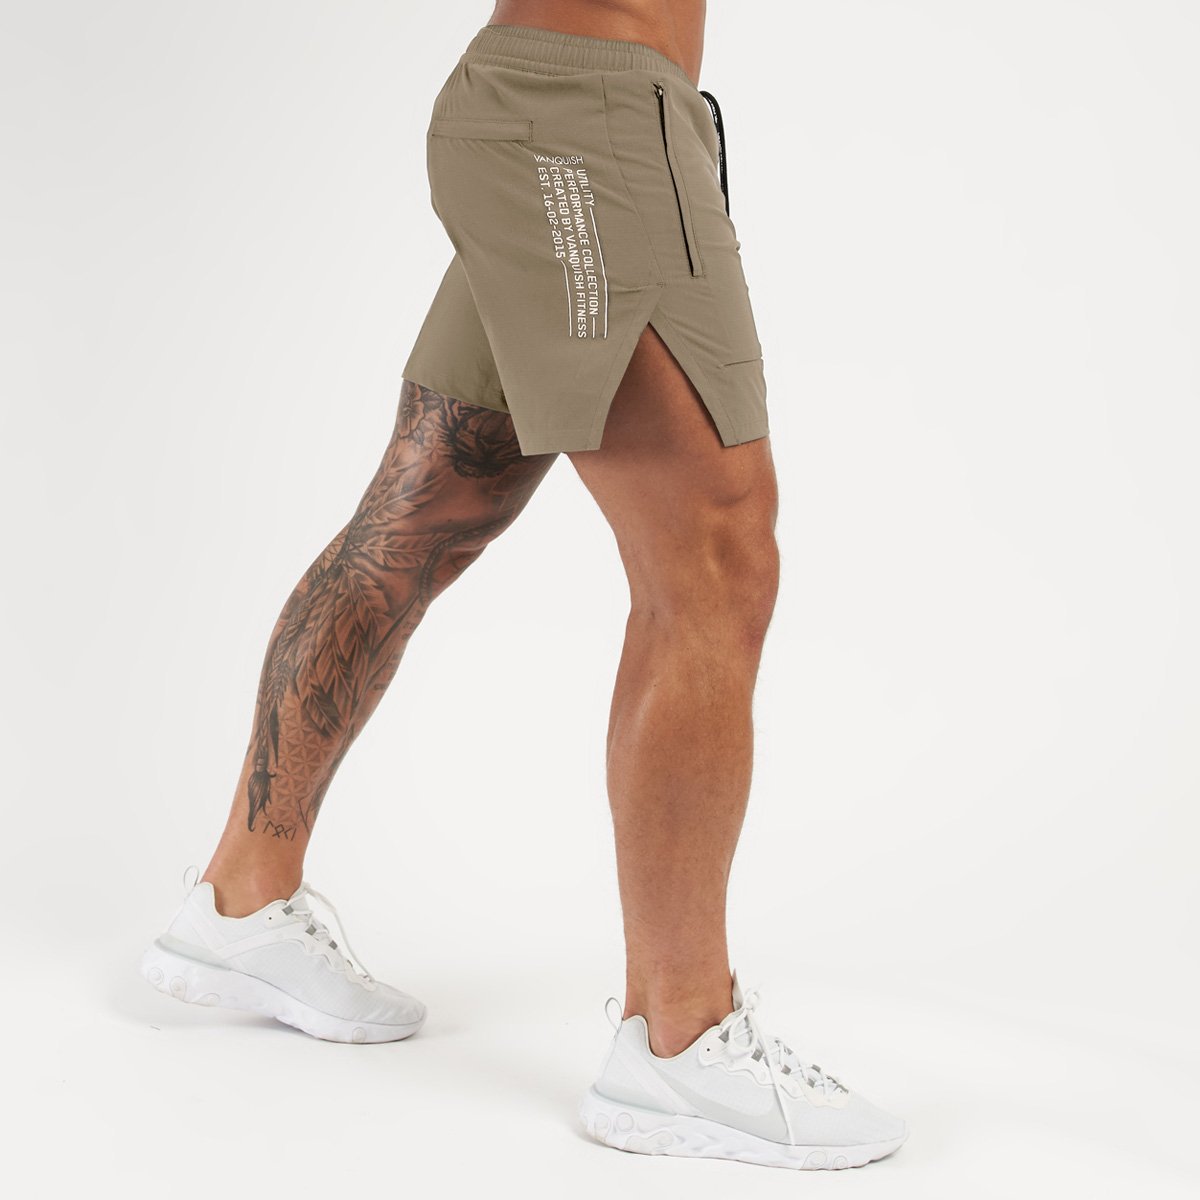 2021 fitness deportes y ocio pantalones cortos de baloncesto pantalones cortos de cinco puntos para correr en cuclillas para hombres